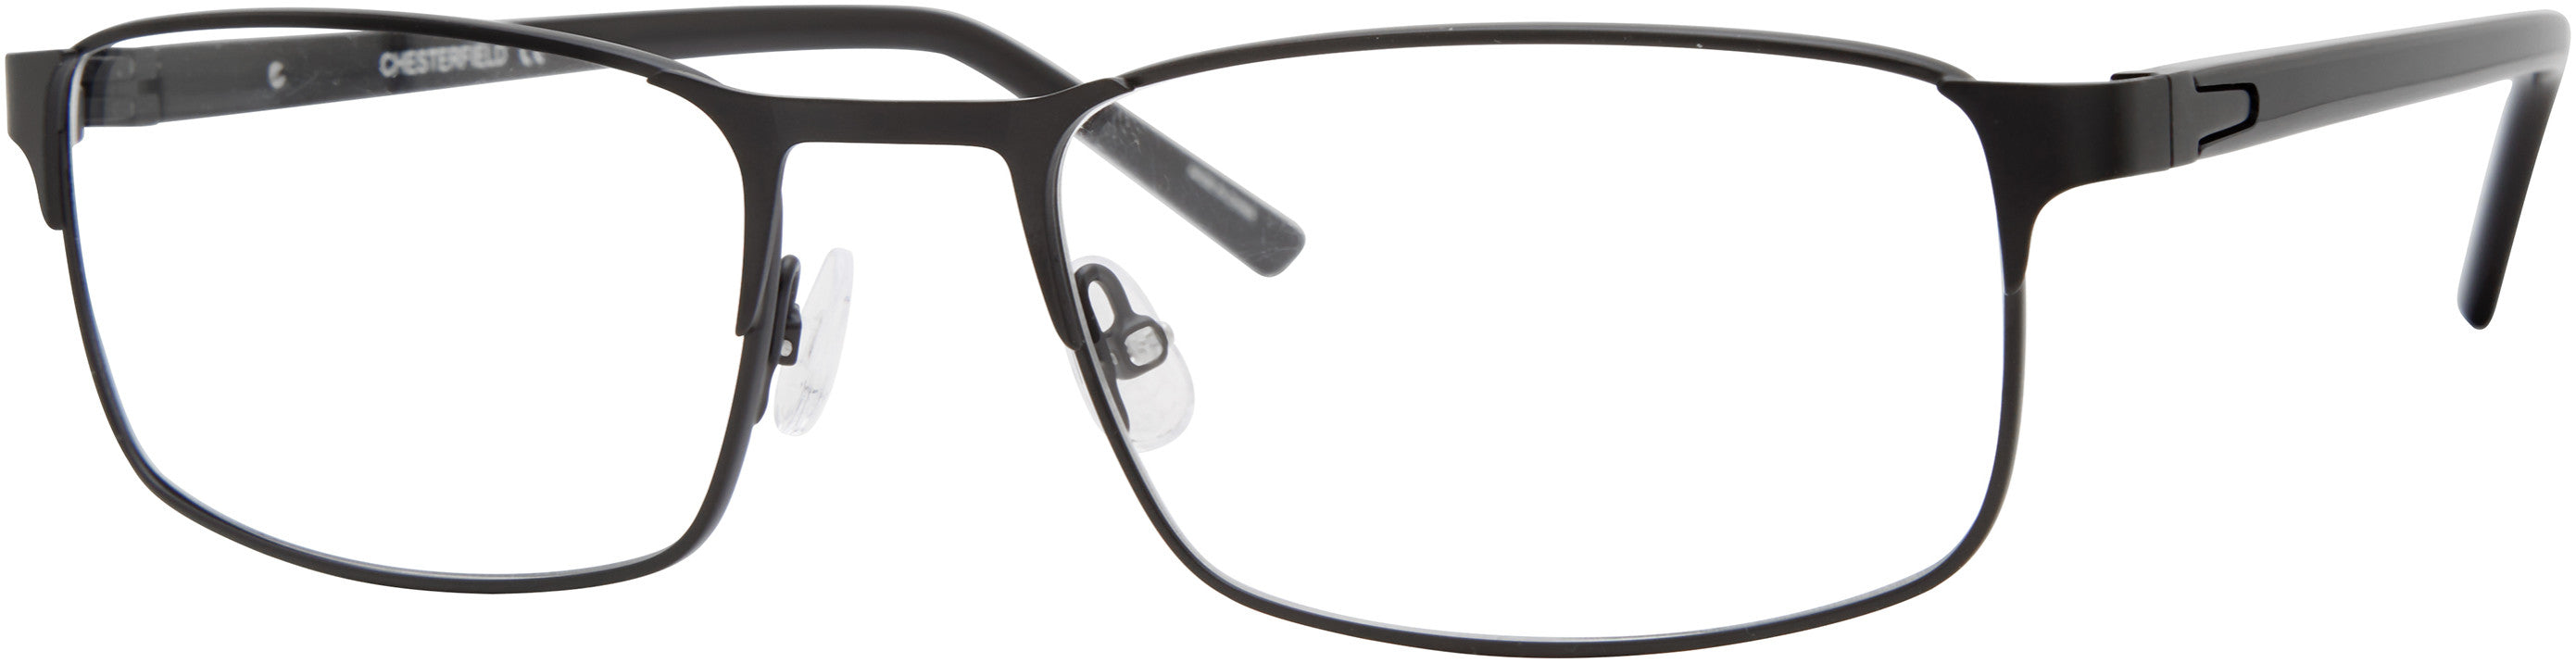  Chesterfield 85XL Rectangular Eyeglasses 0003-0003  Matte Black (00 Demo Lens)